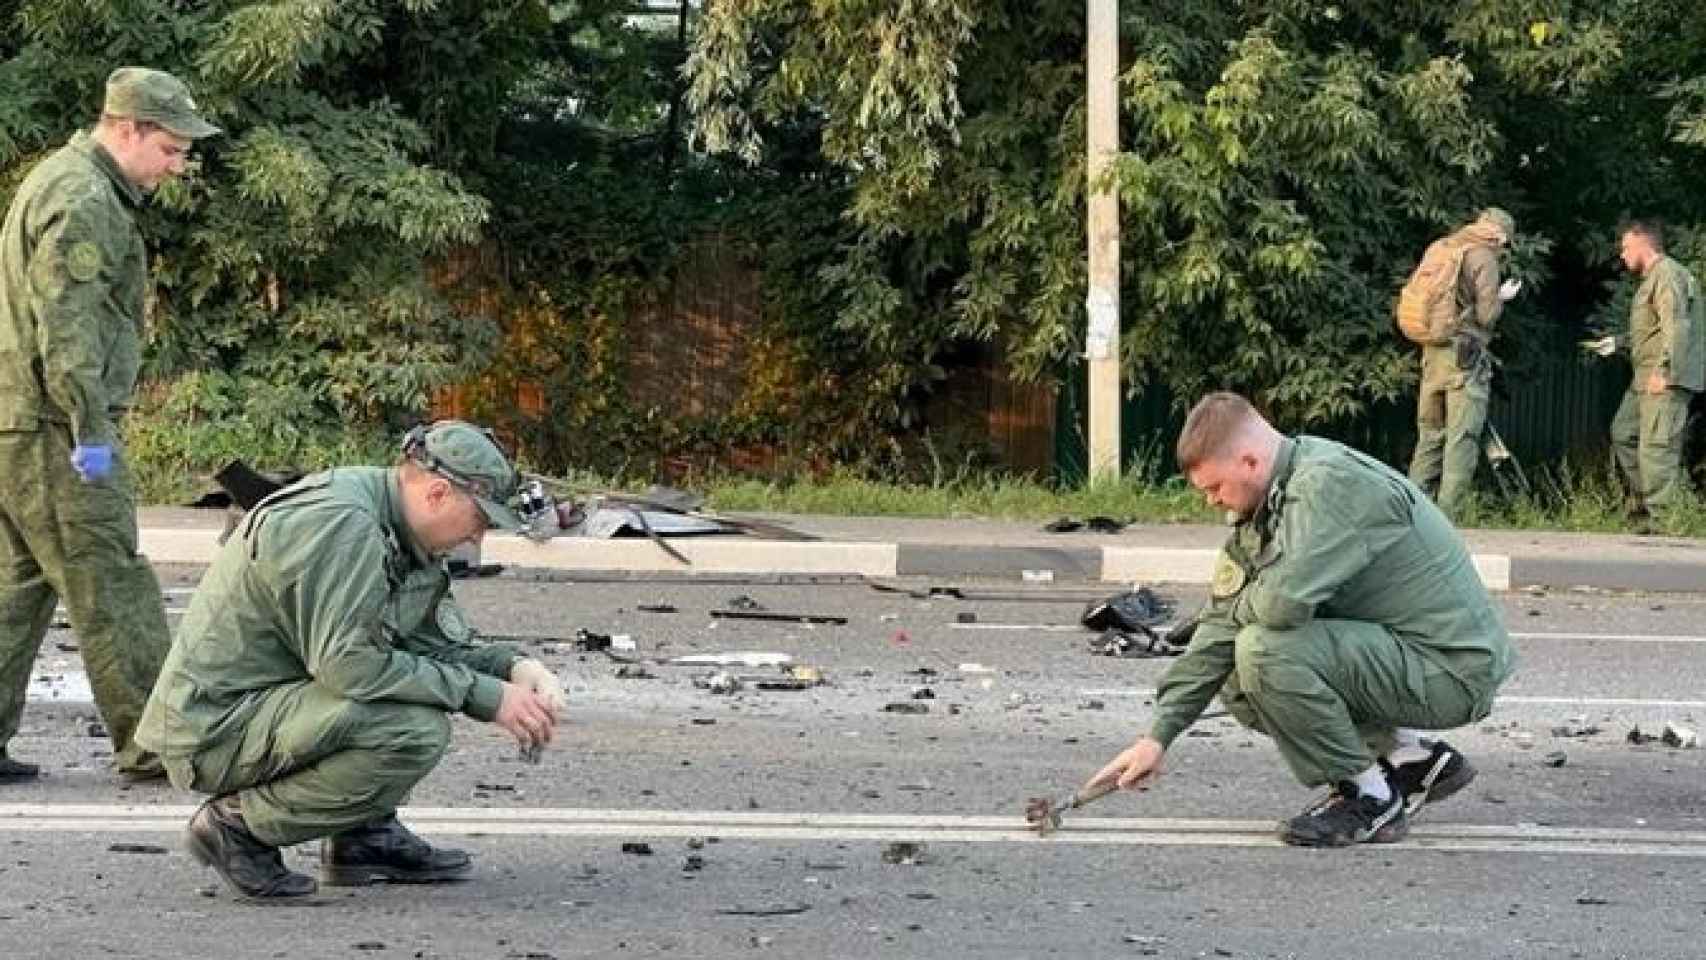 Las fuerzas de seguridad rusas examinan el sitio donde se produjo el atentado.